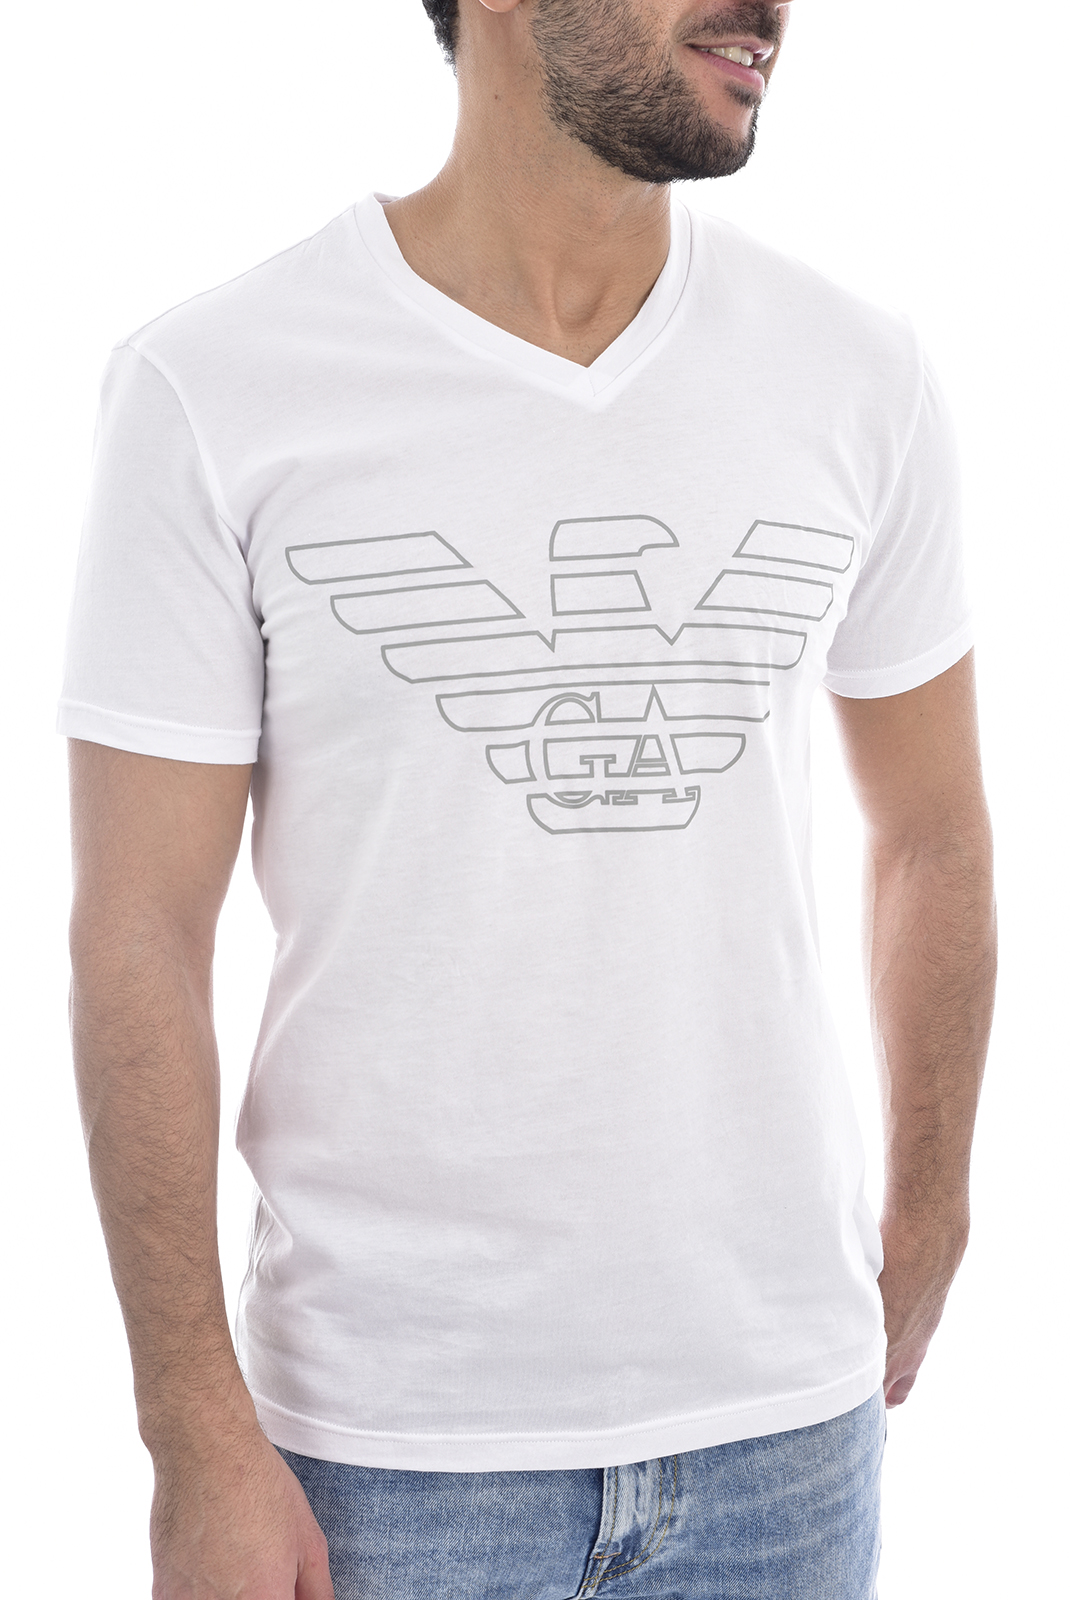 Emporio Armani Tee-shirt Blanc À Manches Courtes 111028 9a578